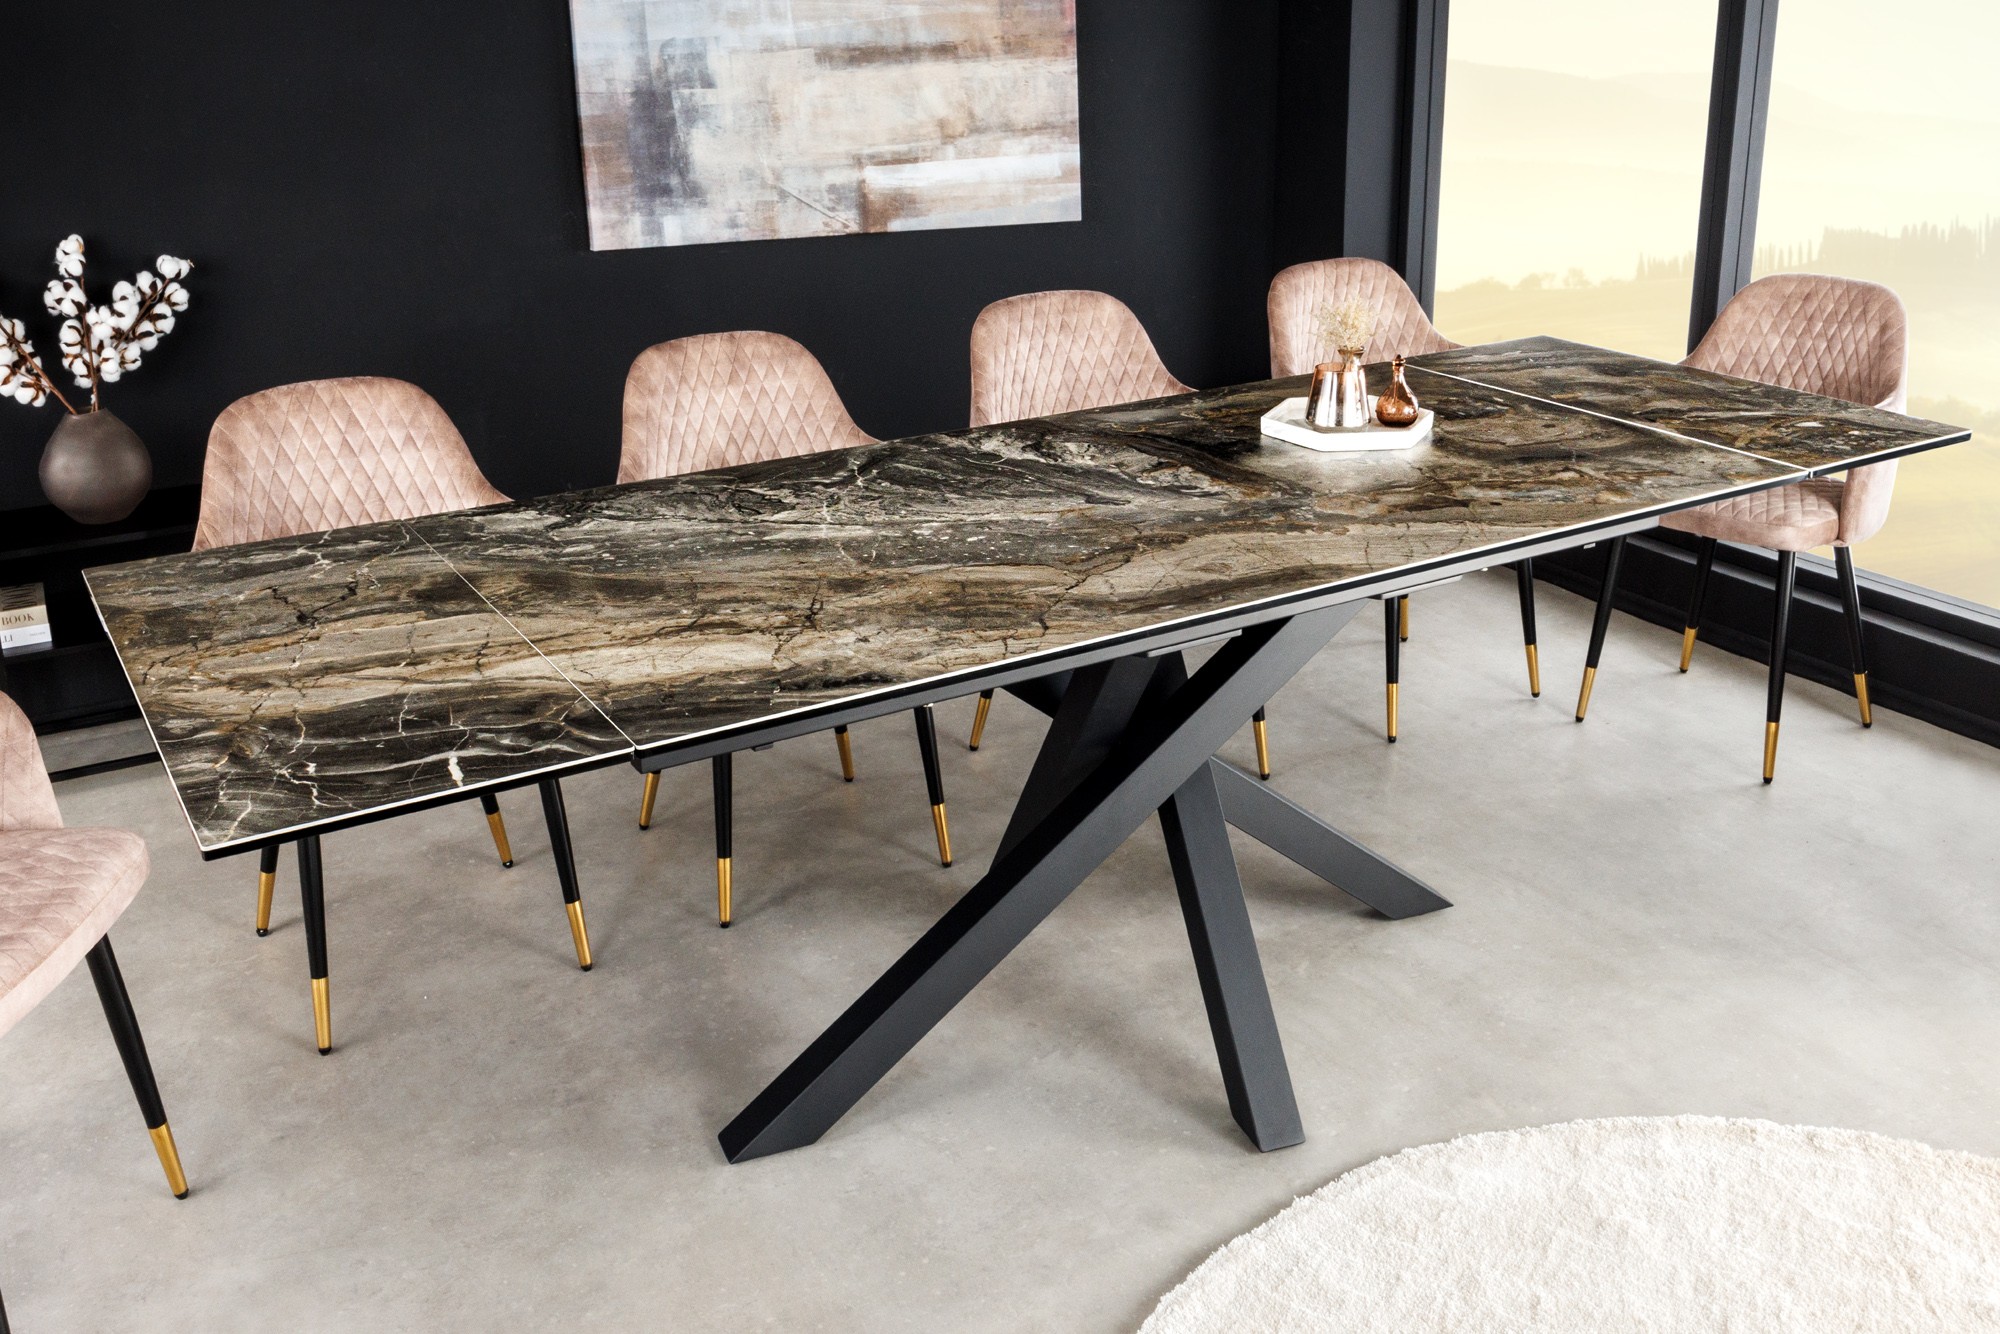 Estila Rozkládací obdélníkový jídelní stůl Ceramia s vrchní deskou s mramorovým designem a překříženýma nohama černá hnědá 180 cm